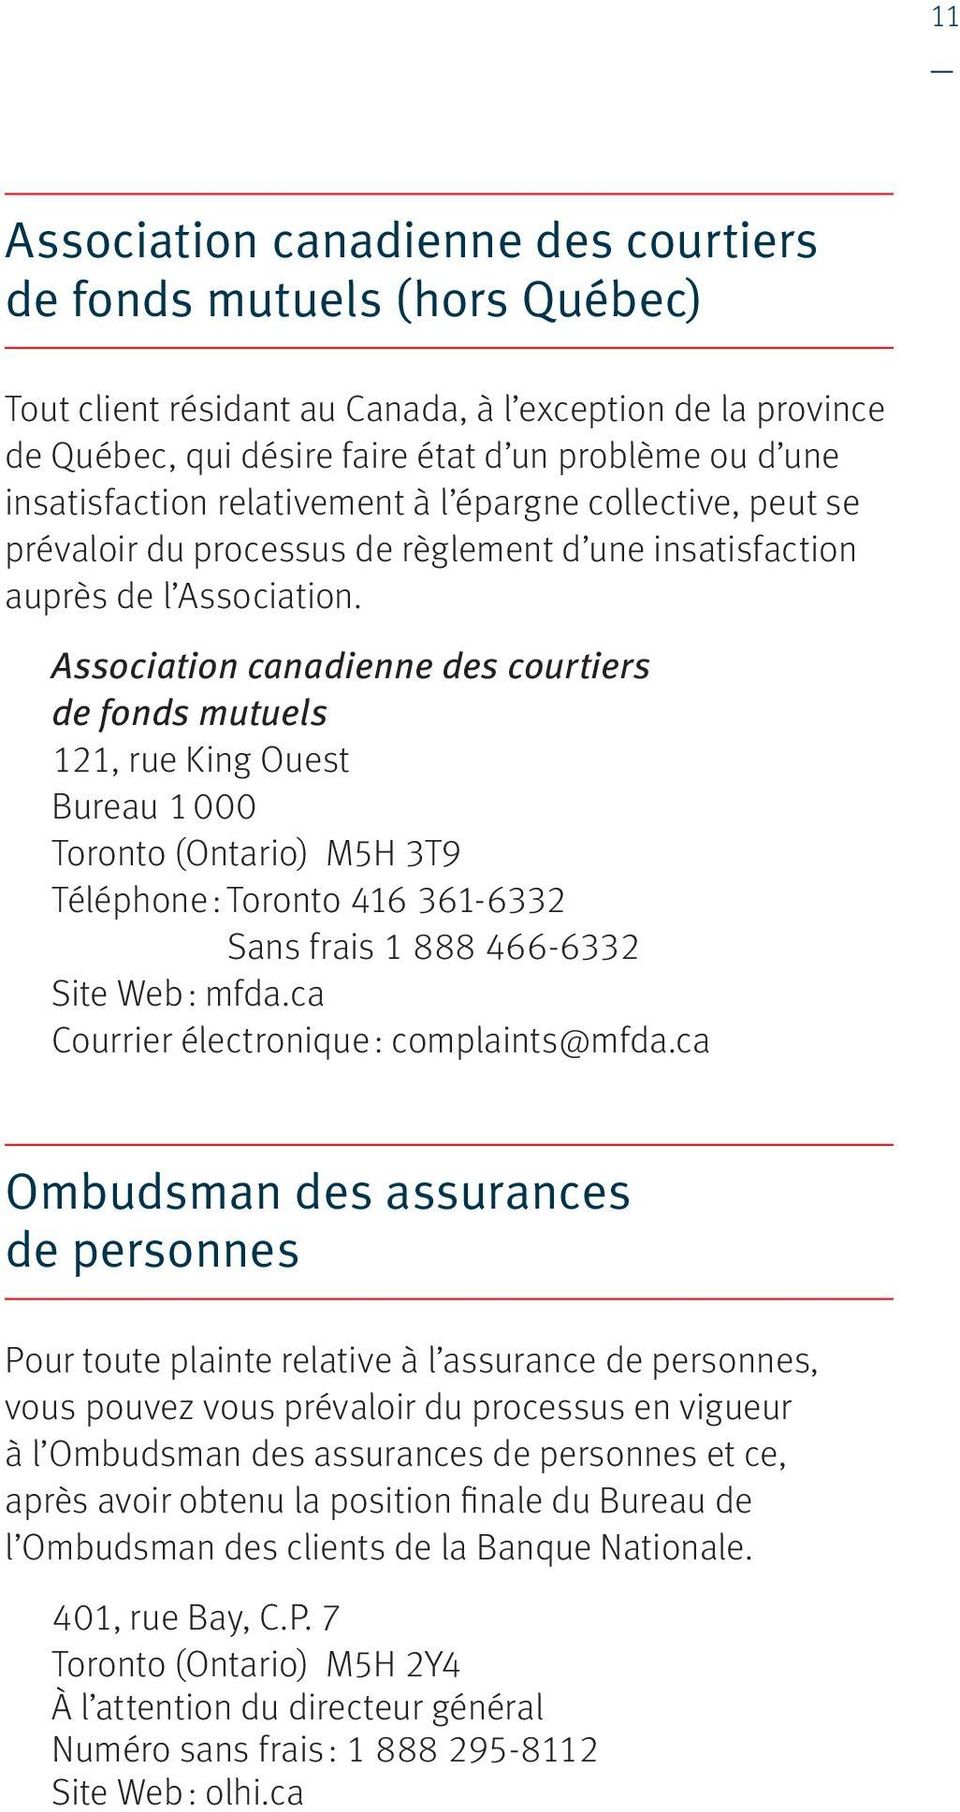 Association canadienne des courtiers de fonds mutuels 121, rue King Ouest Bureau 1 000 Toronto (Ontario) M5H 3T9 Téléphone : Toronto 416 361-6332 Sans frais 1 888 466-6332 Site Web : mfda.